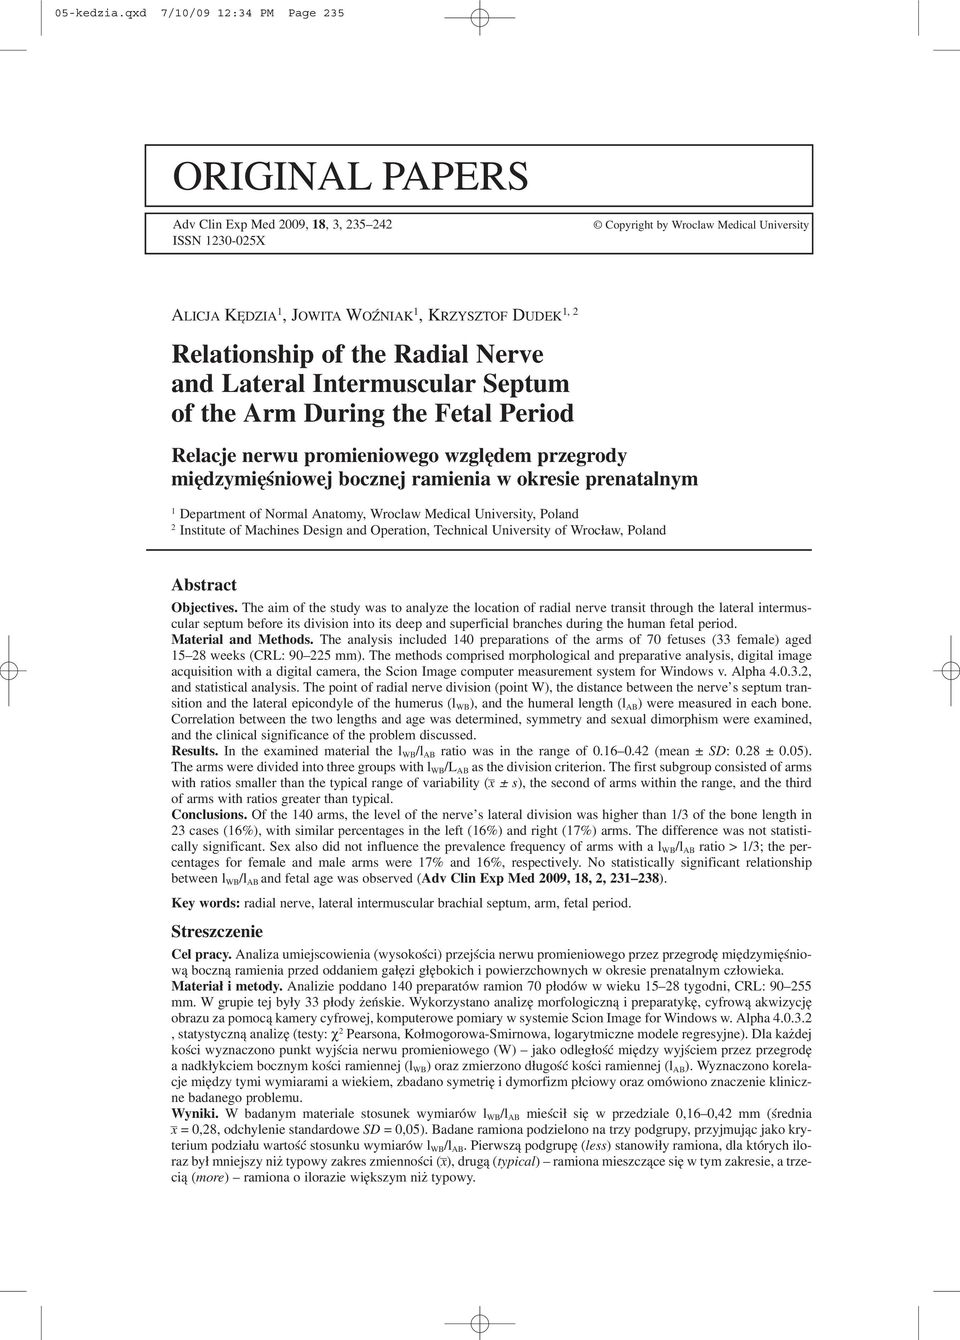 Relationship of the Radial Nerve and Lateral Intermuscular Septum of the Arm During the Fetal Period Relacje nerwu promieniowego względem przegrody międzymięśniowej bocznej ramienia w okresie